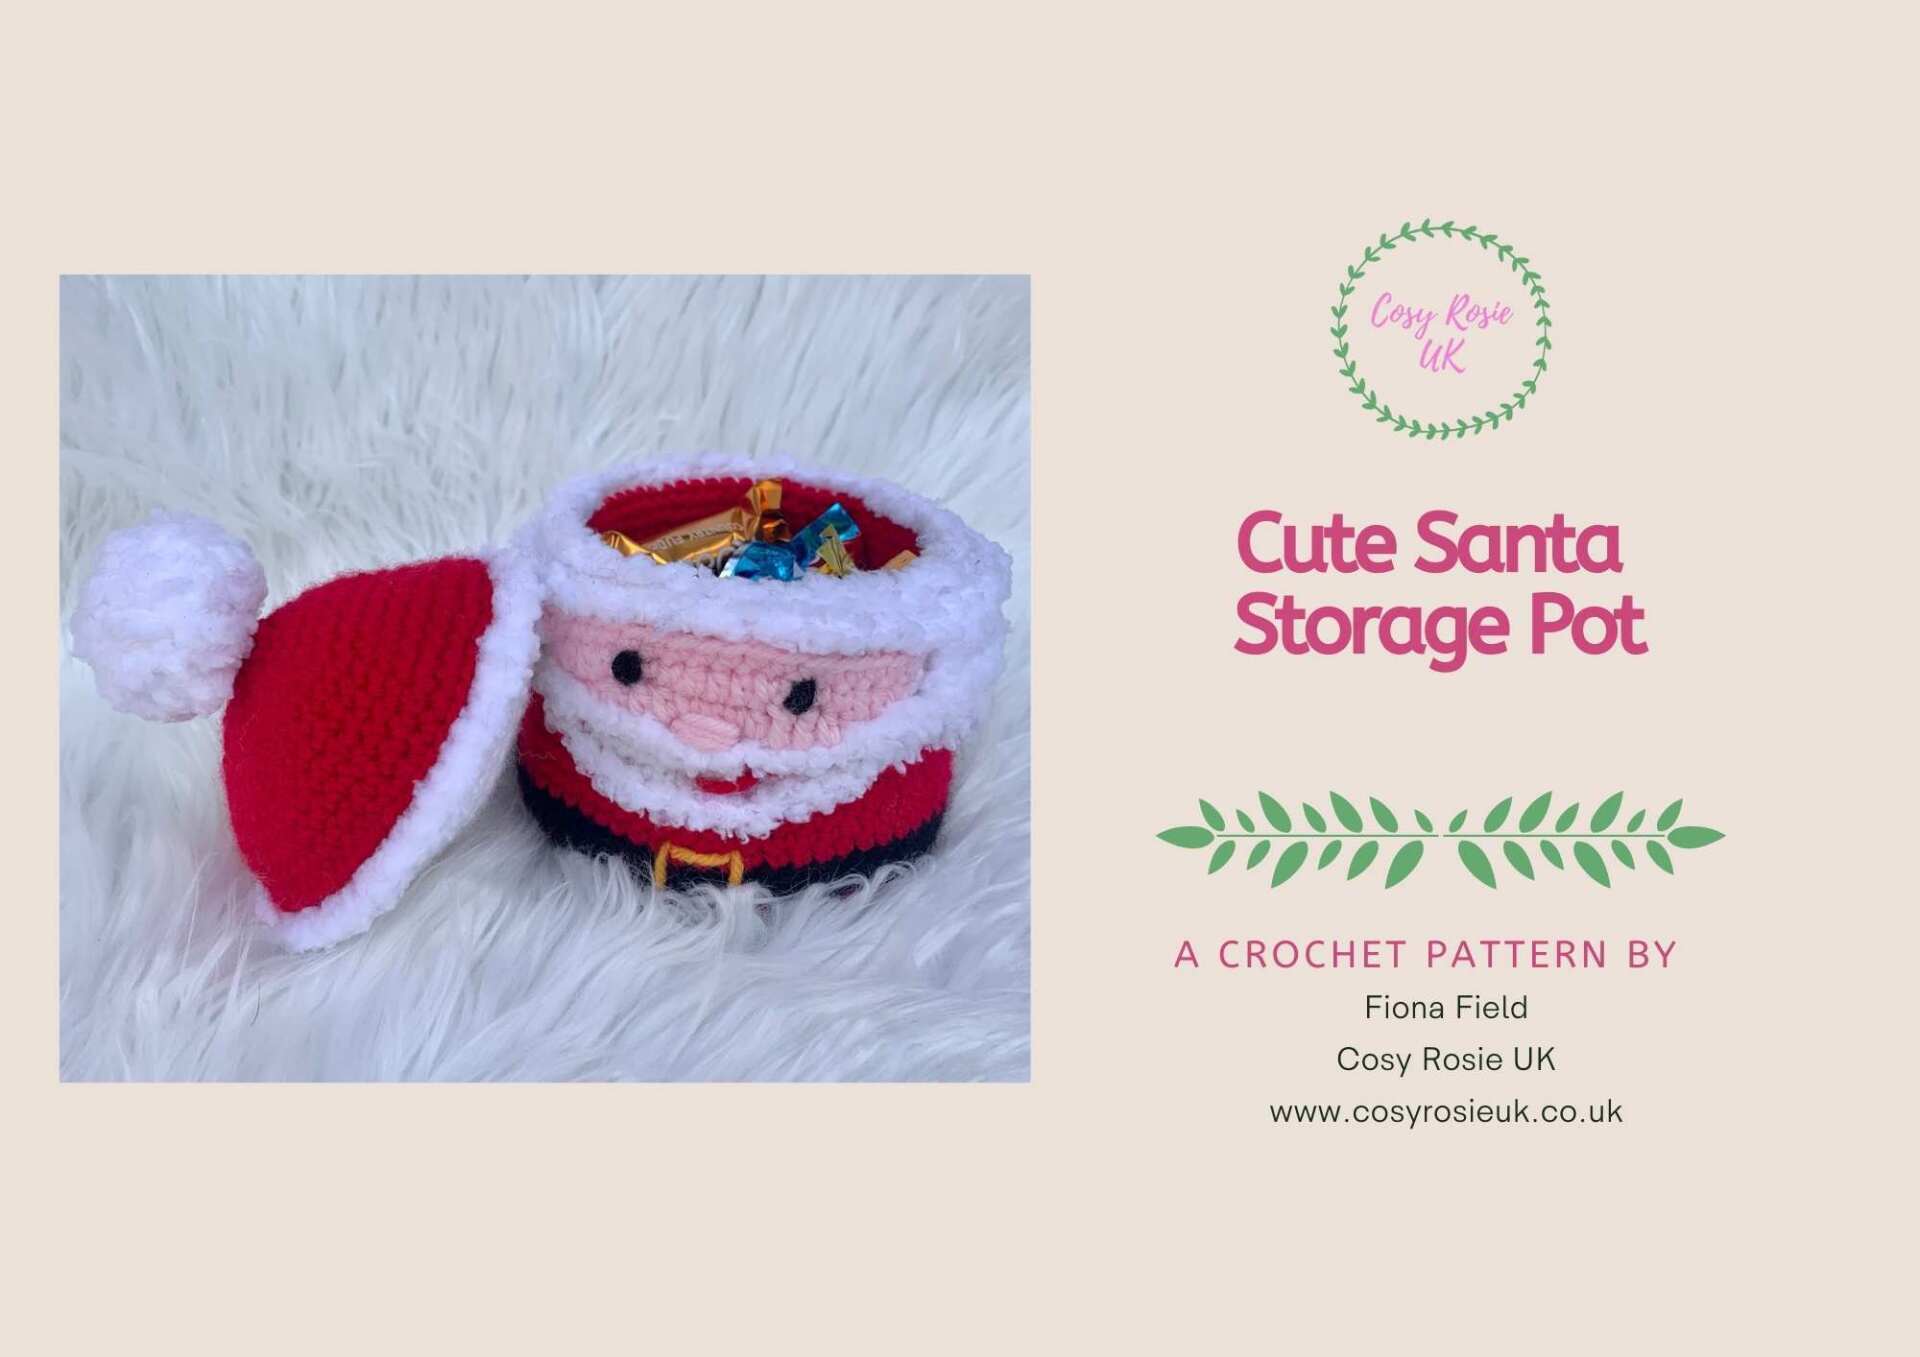 Crochet Santa Gift Basket with Lid crochet pattern